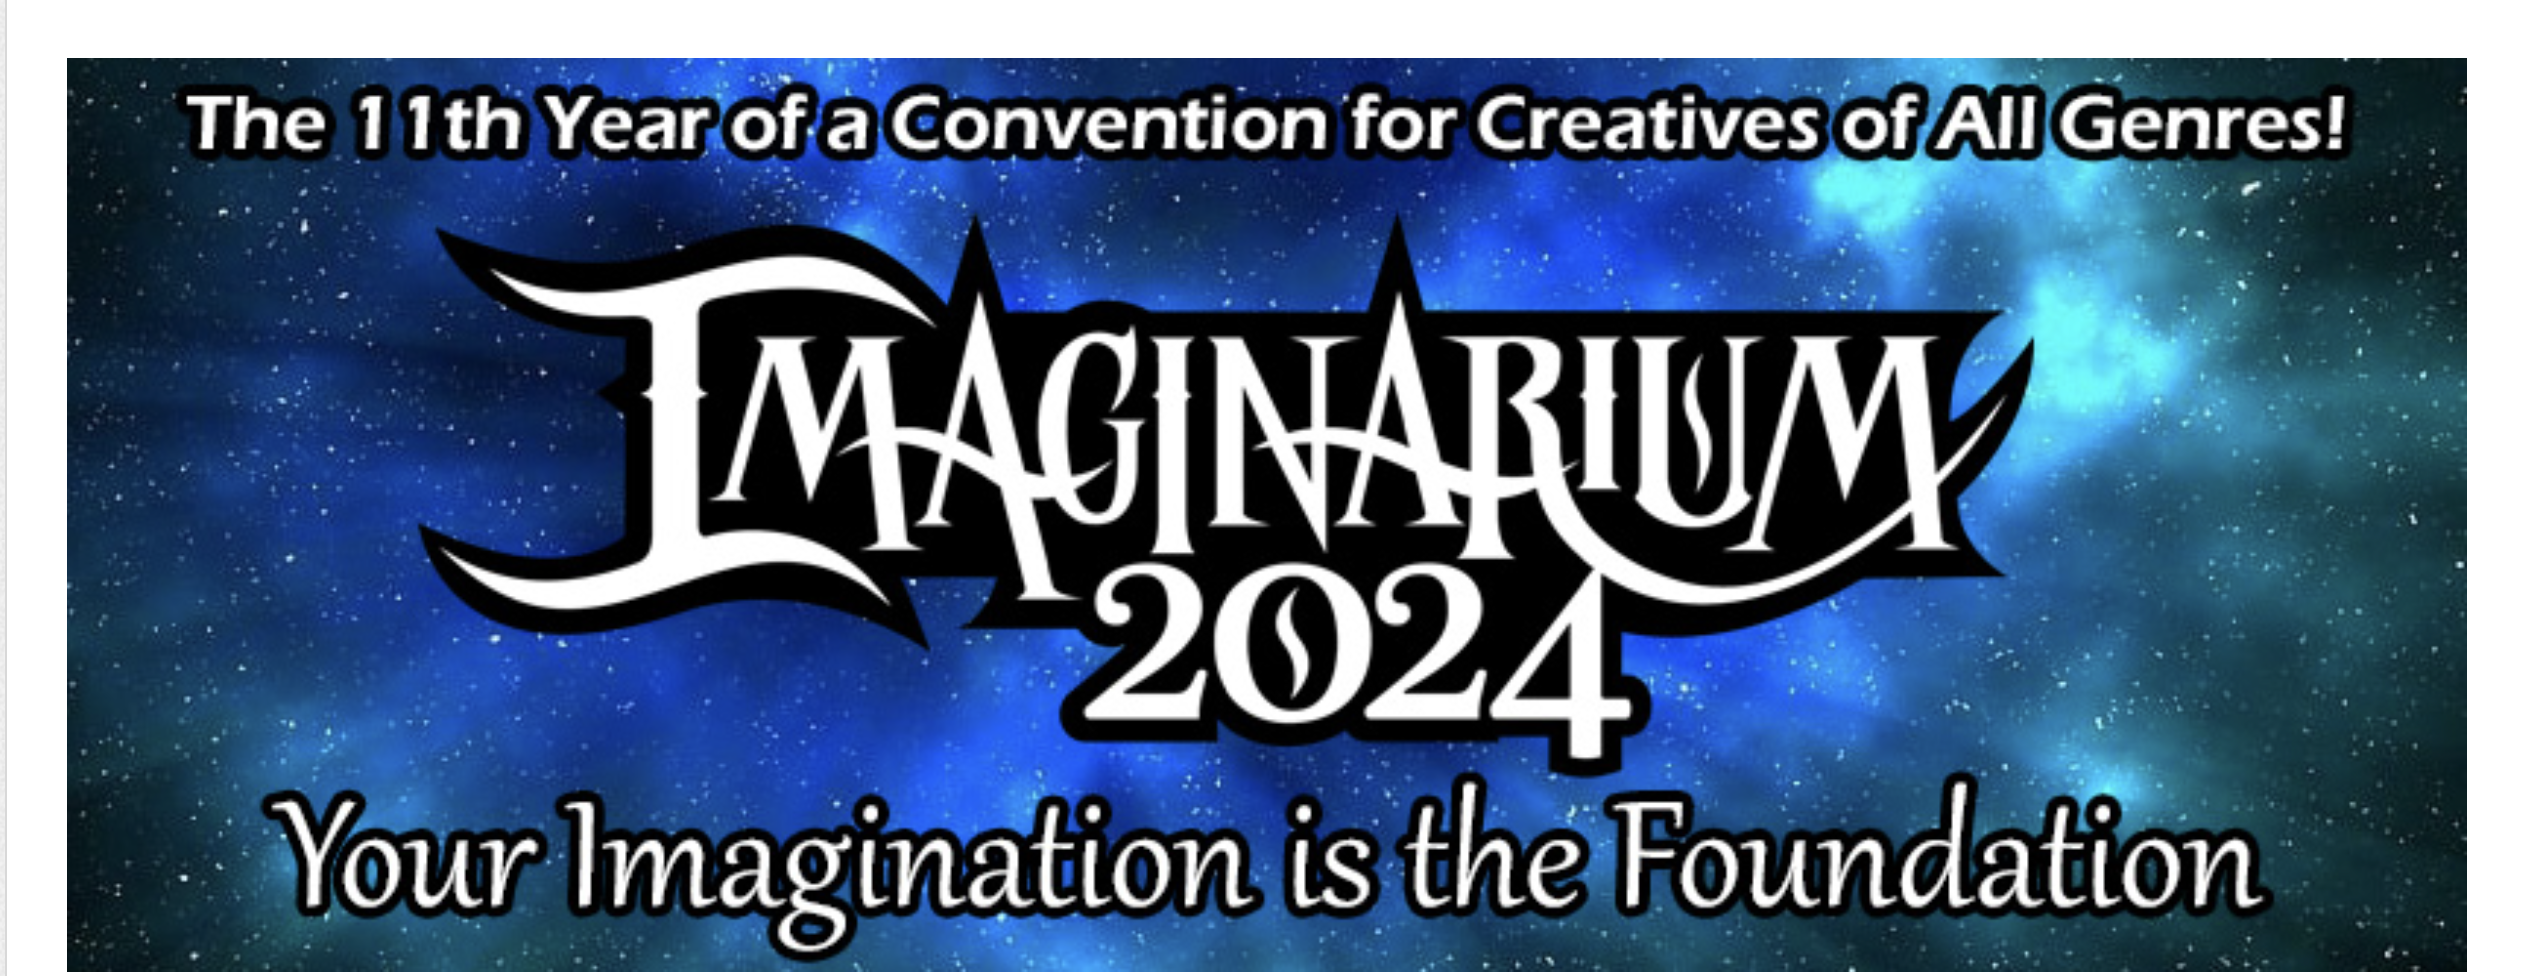 author conferences imaginarium convention